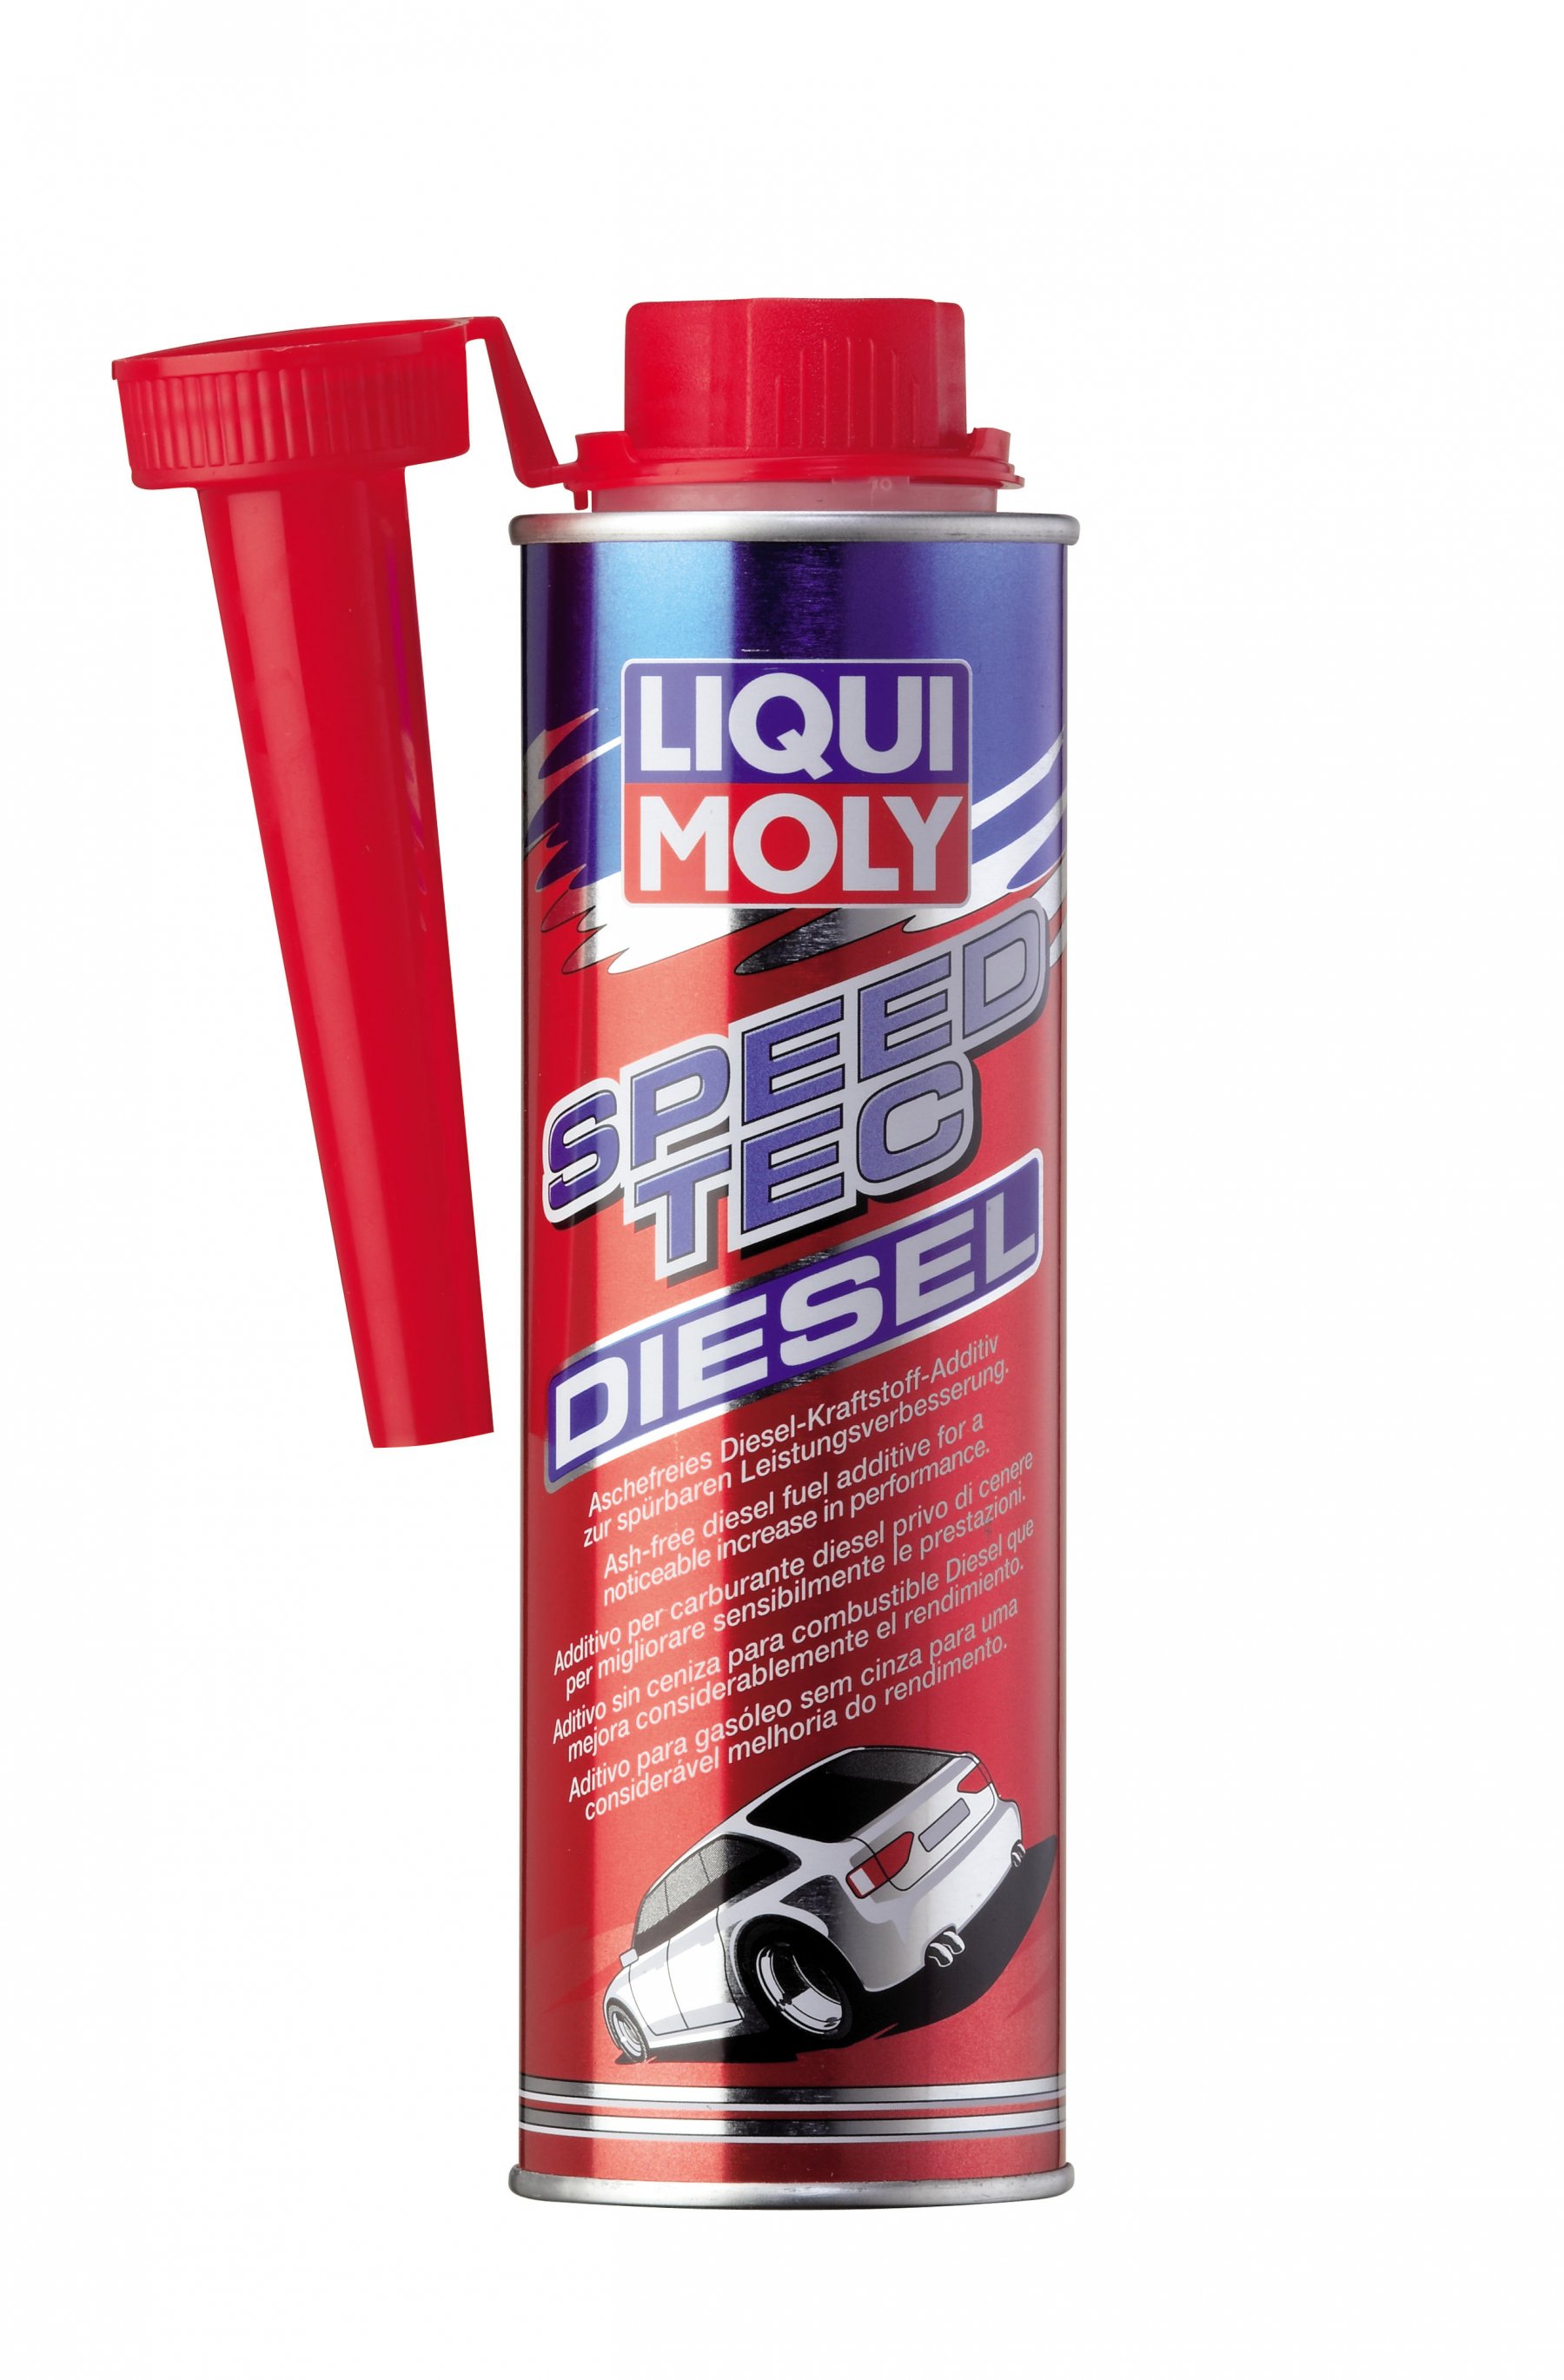 Liqui Moly Speed Tec Diesel Присадка для улучшения процесса сгорания и ускорения